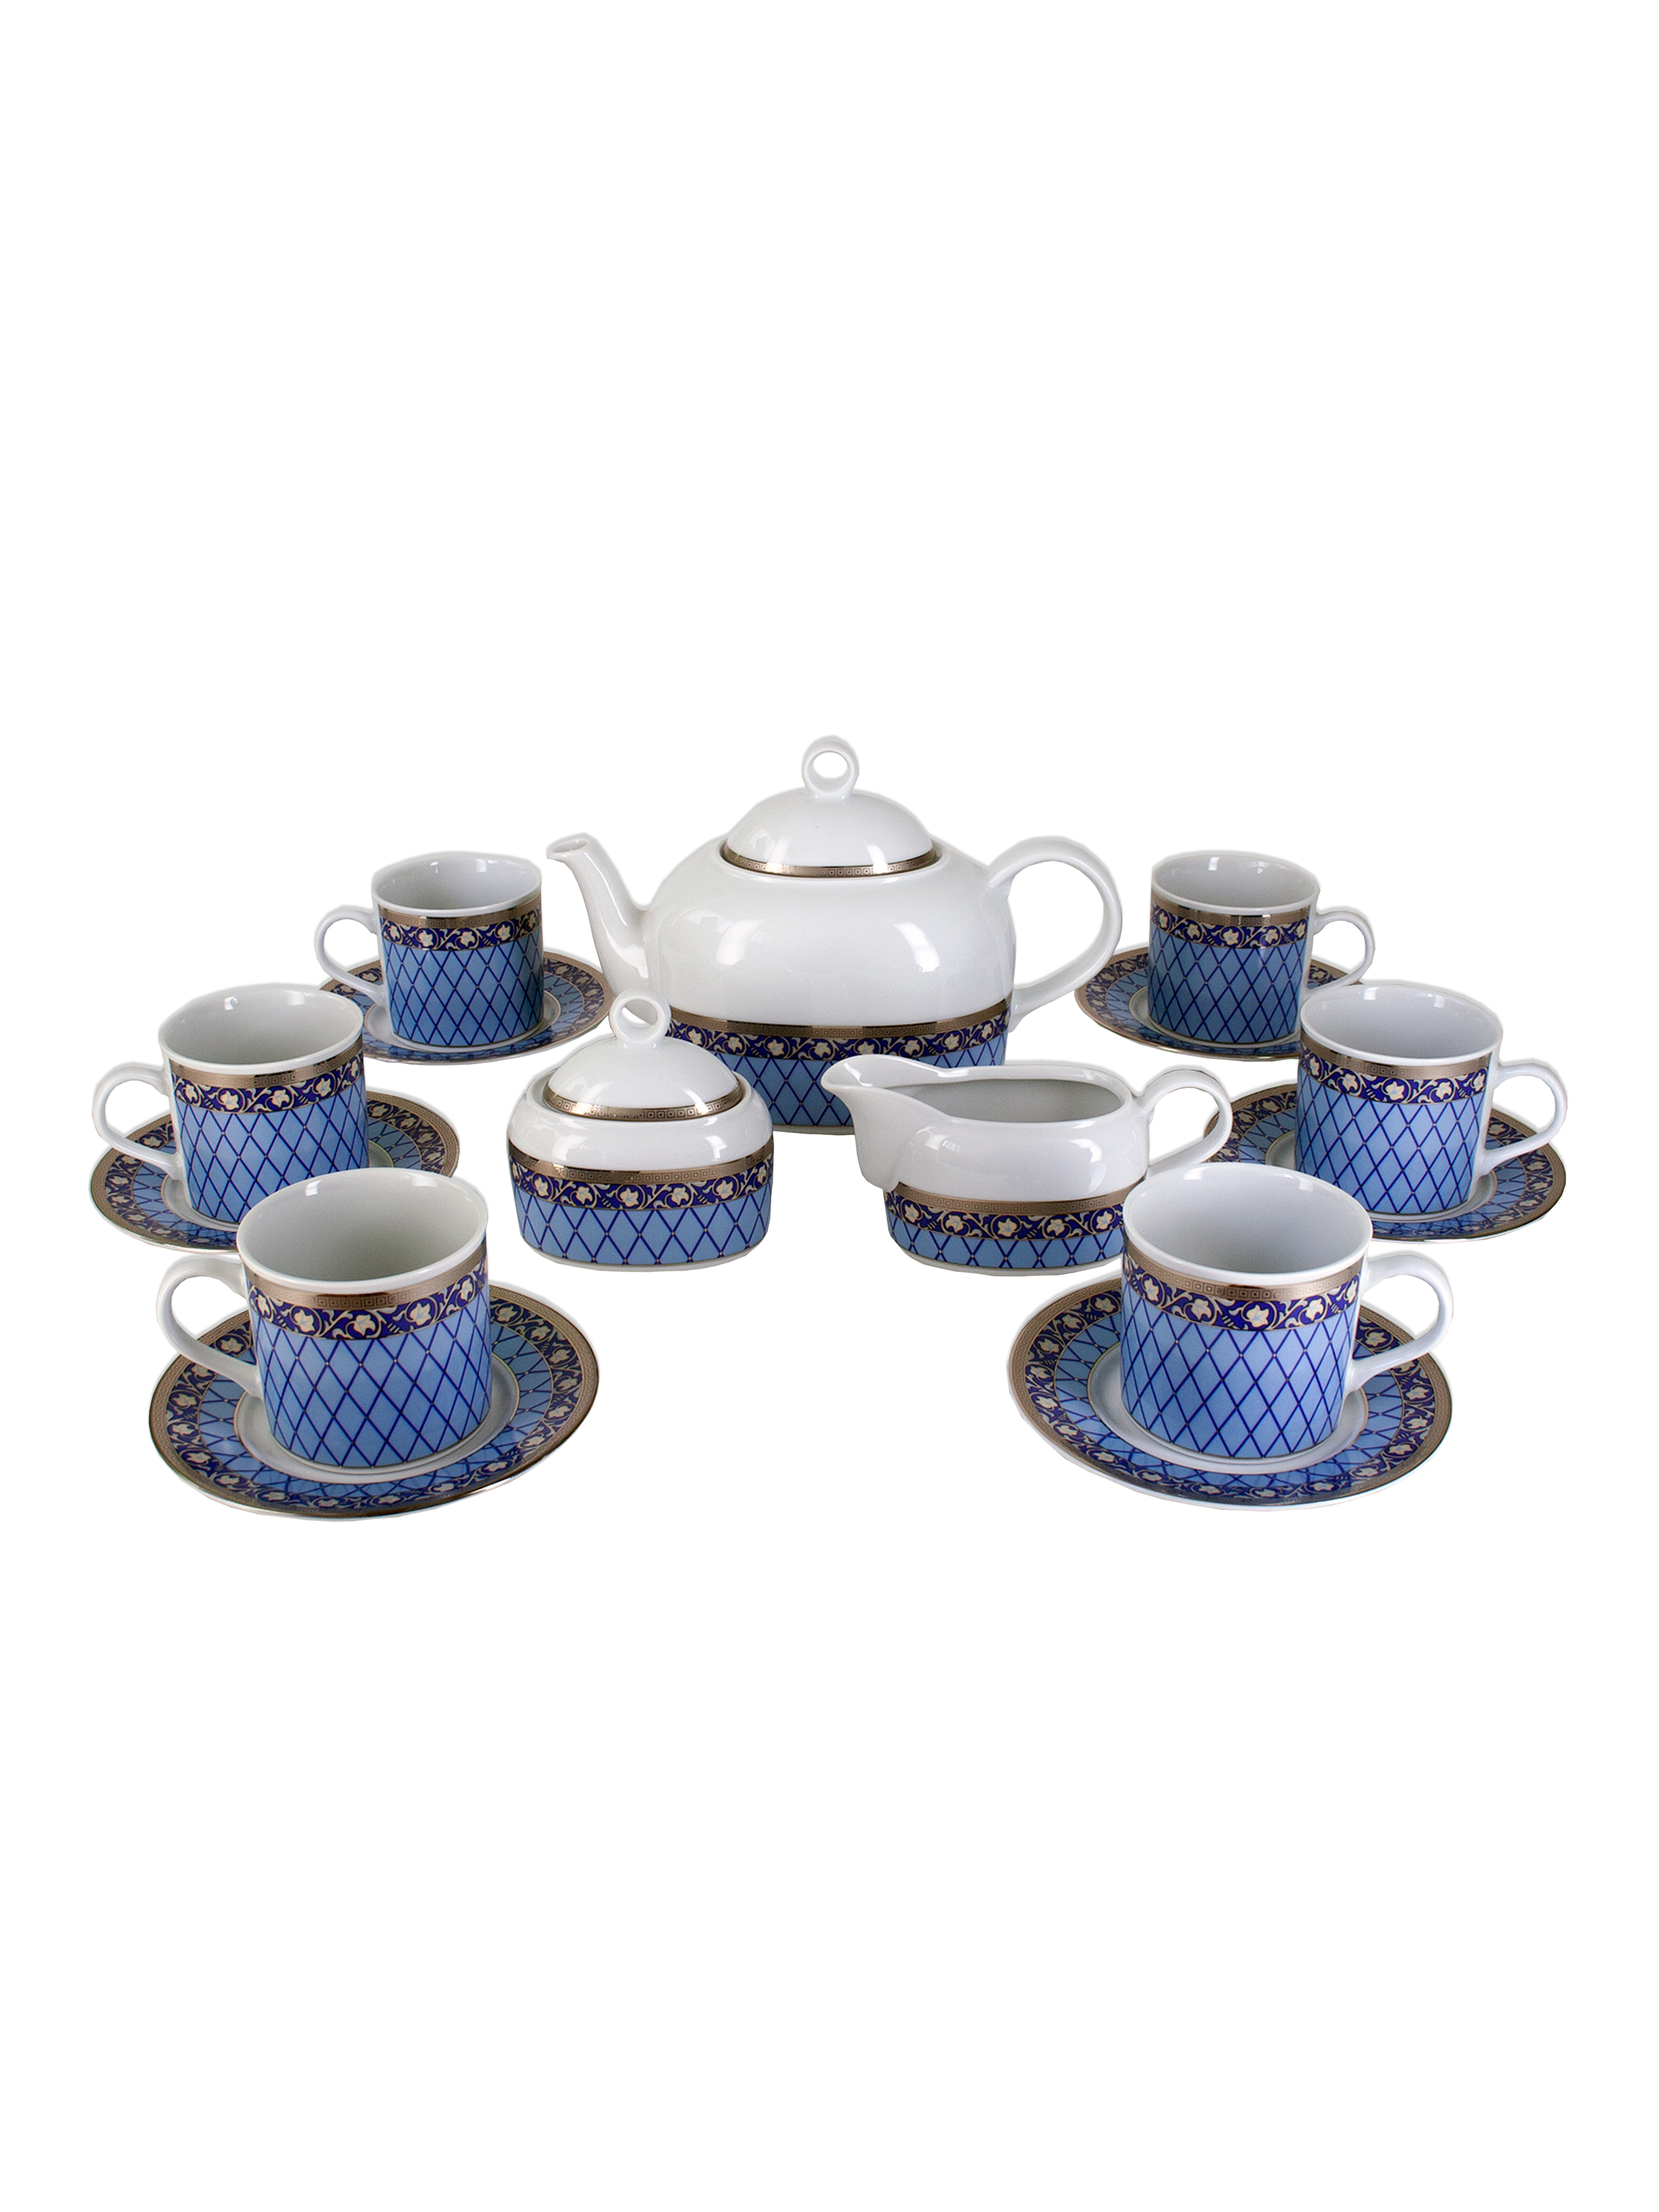 Чайный сервиз Cairo на 6 персон 17 предметов декор Сетка на синем, отводка платина. Фарфор Тхун, Чехия.